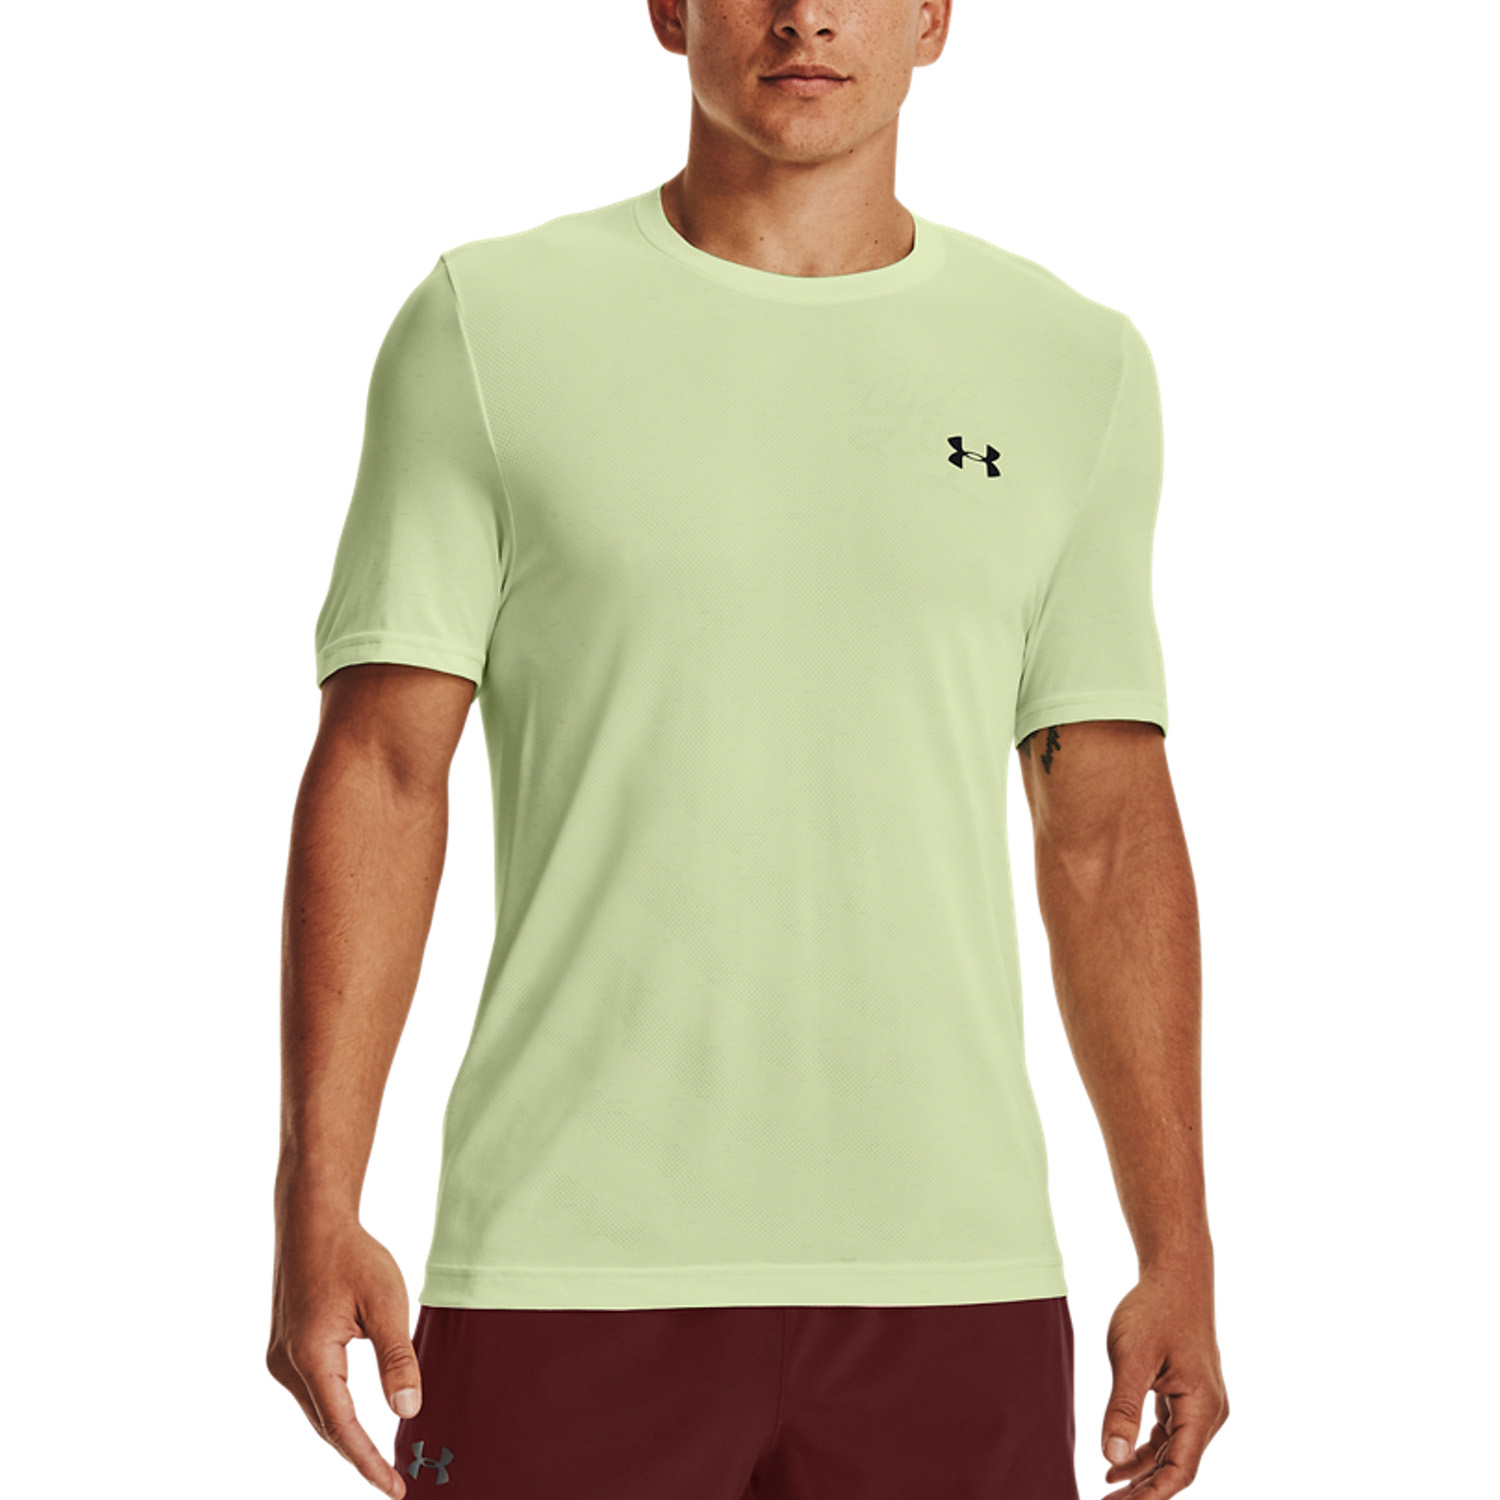 Suponer perdonado de madera Under Armour Seamless Camiseta de Tenis Hombre - Phosphor Green